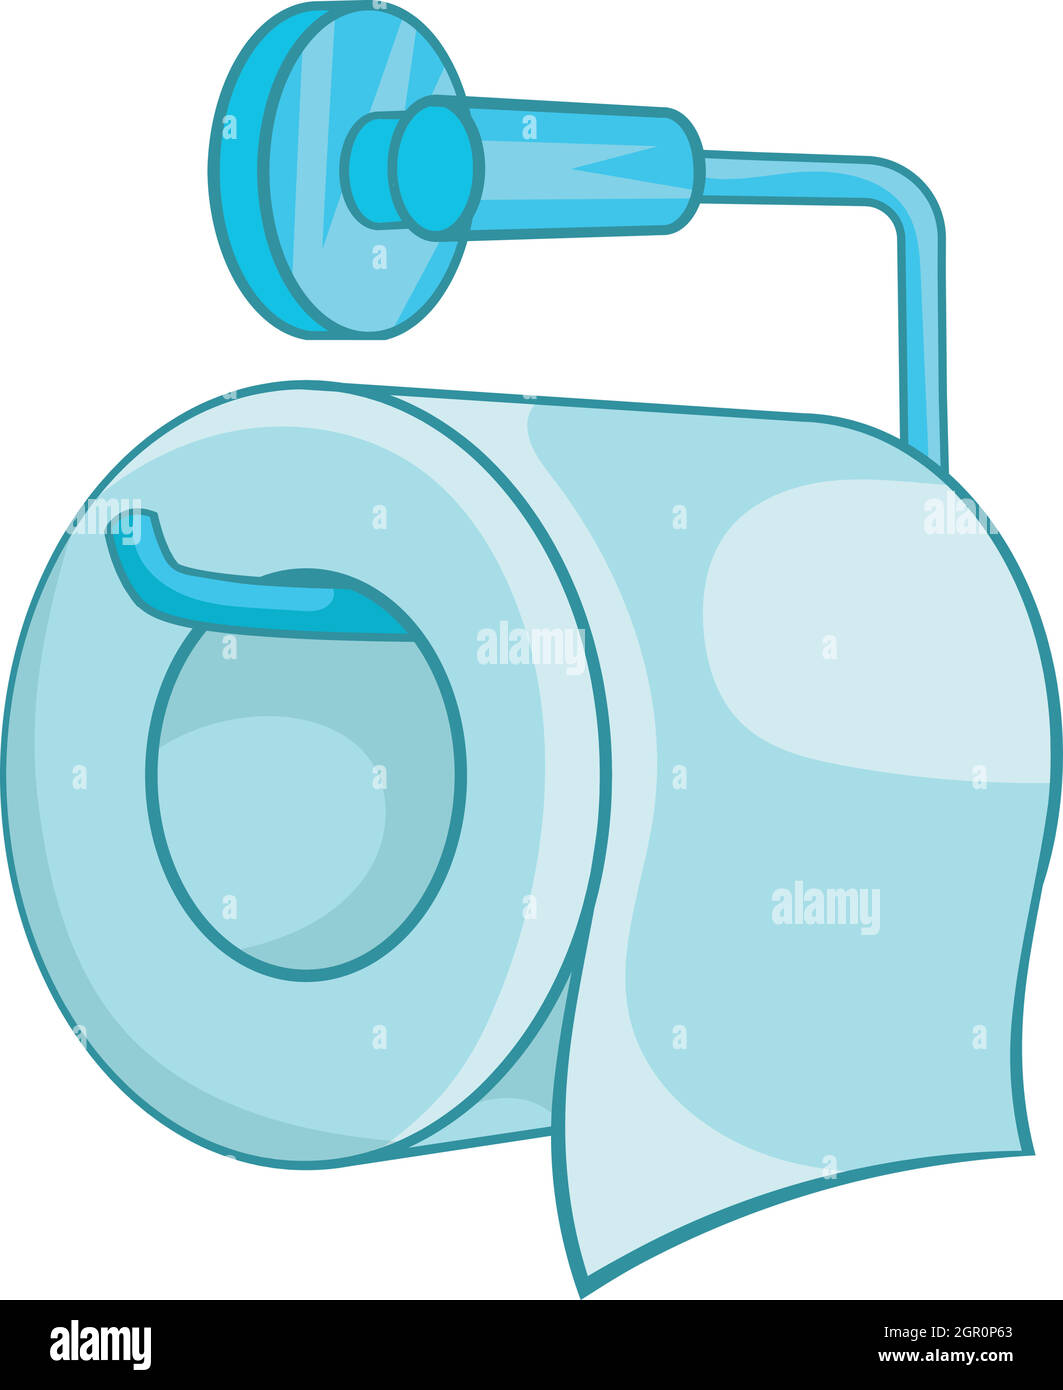 L'icône de papier toilette dans un style cartoon Illustration de Vecteur